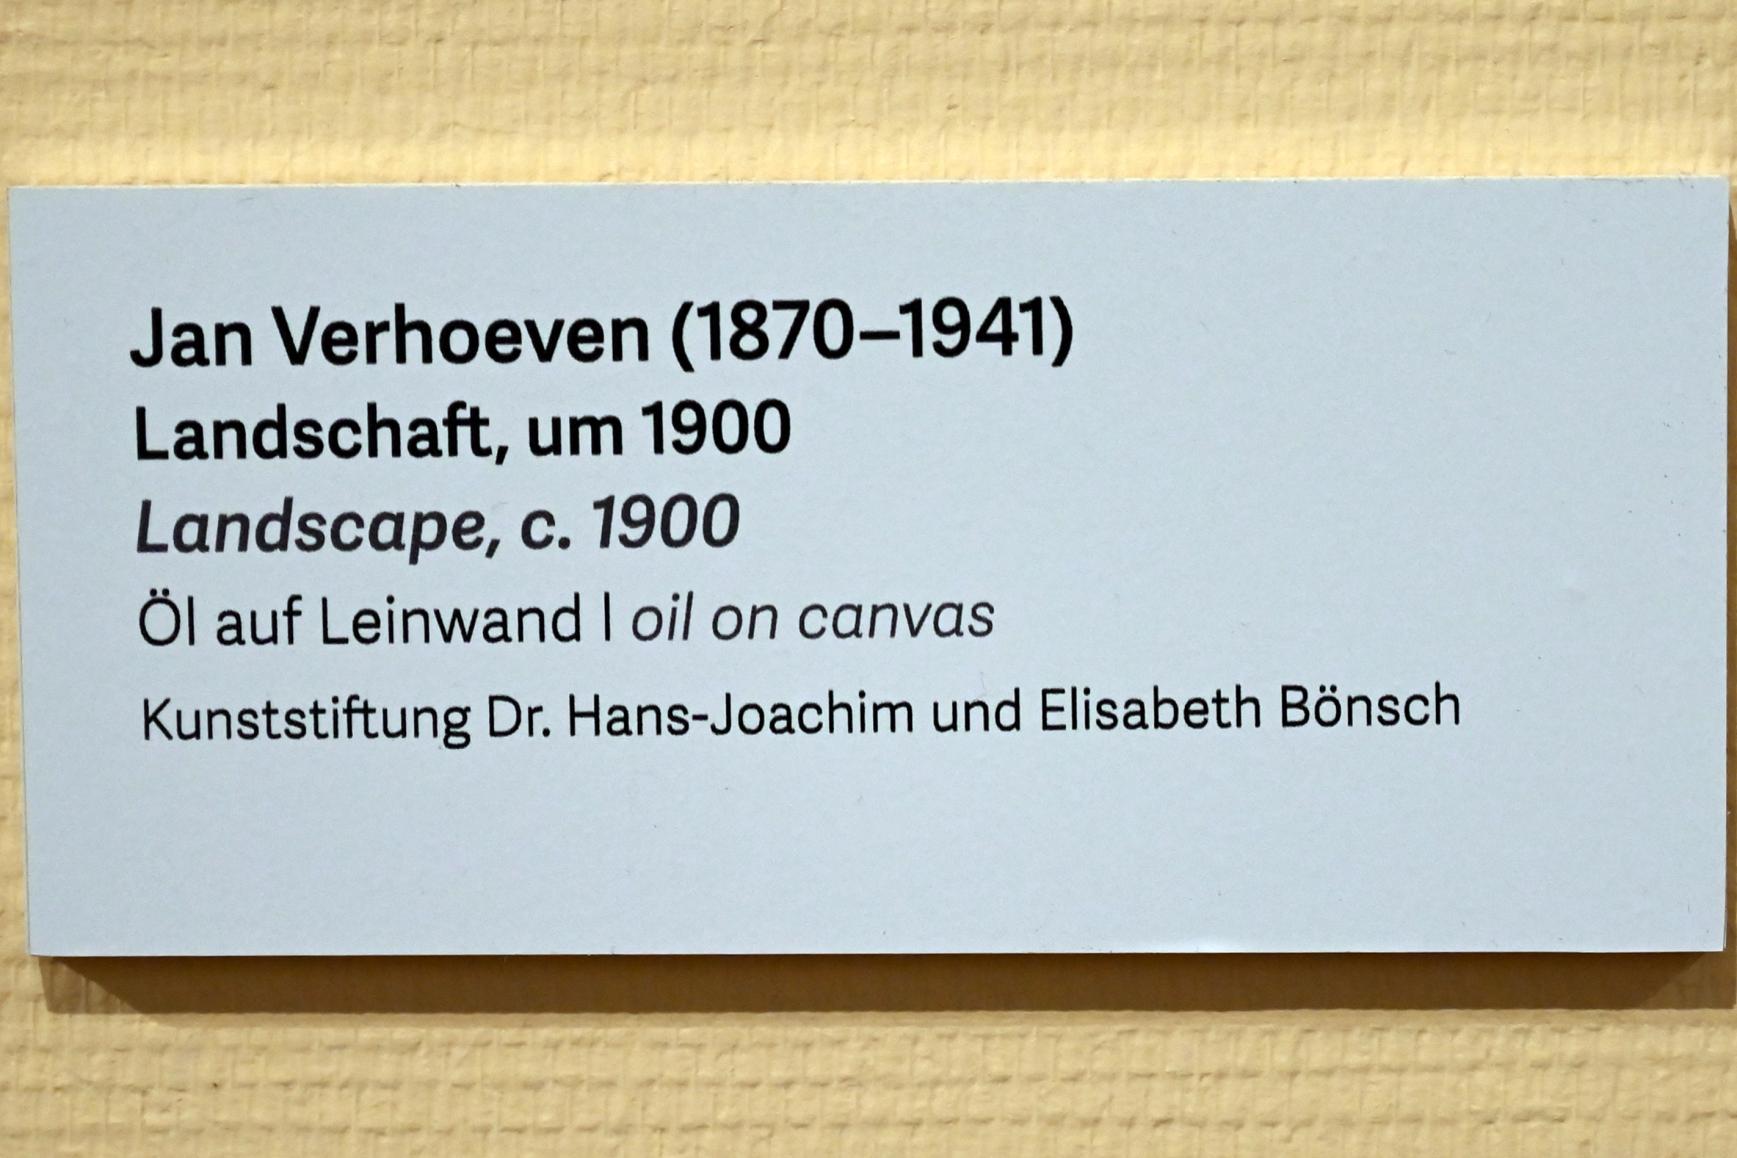 Jan Verhoeven (1900), Landschaft, Schleswig, Landesmuseum für Kunst und Kulturgeschichte, Kunst im 20. Jh., um 1900, Bild 2/2